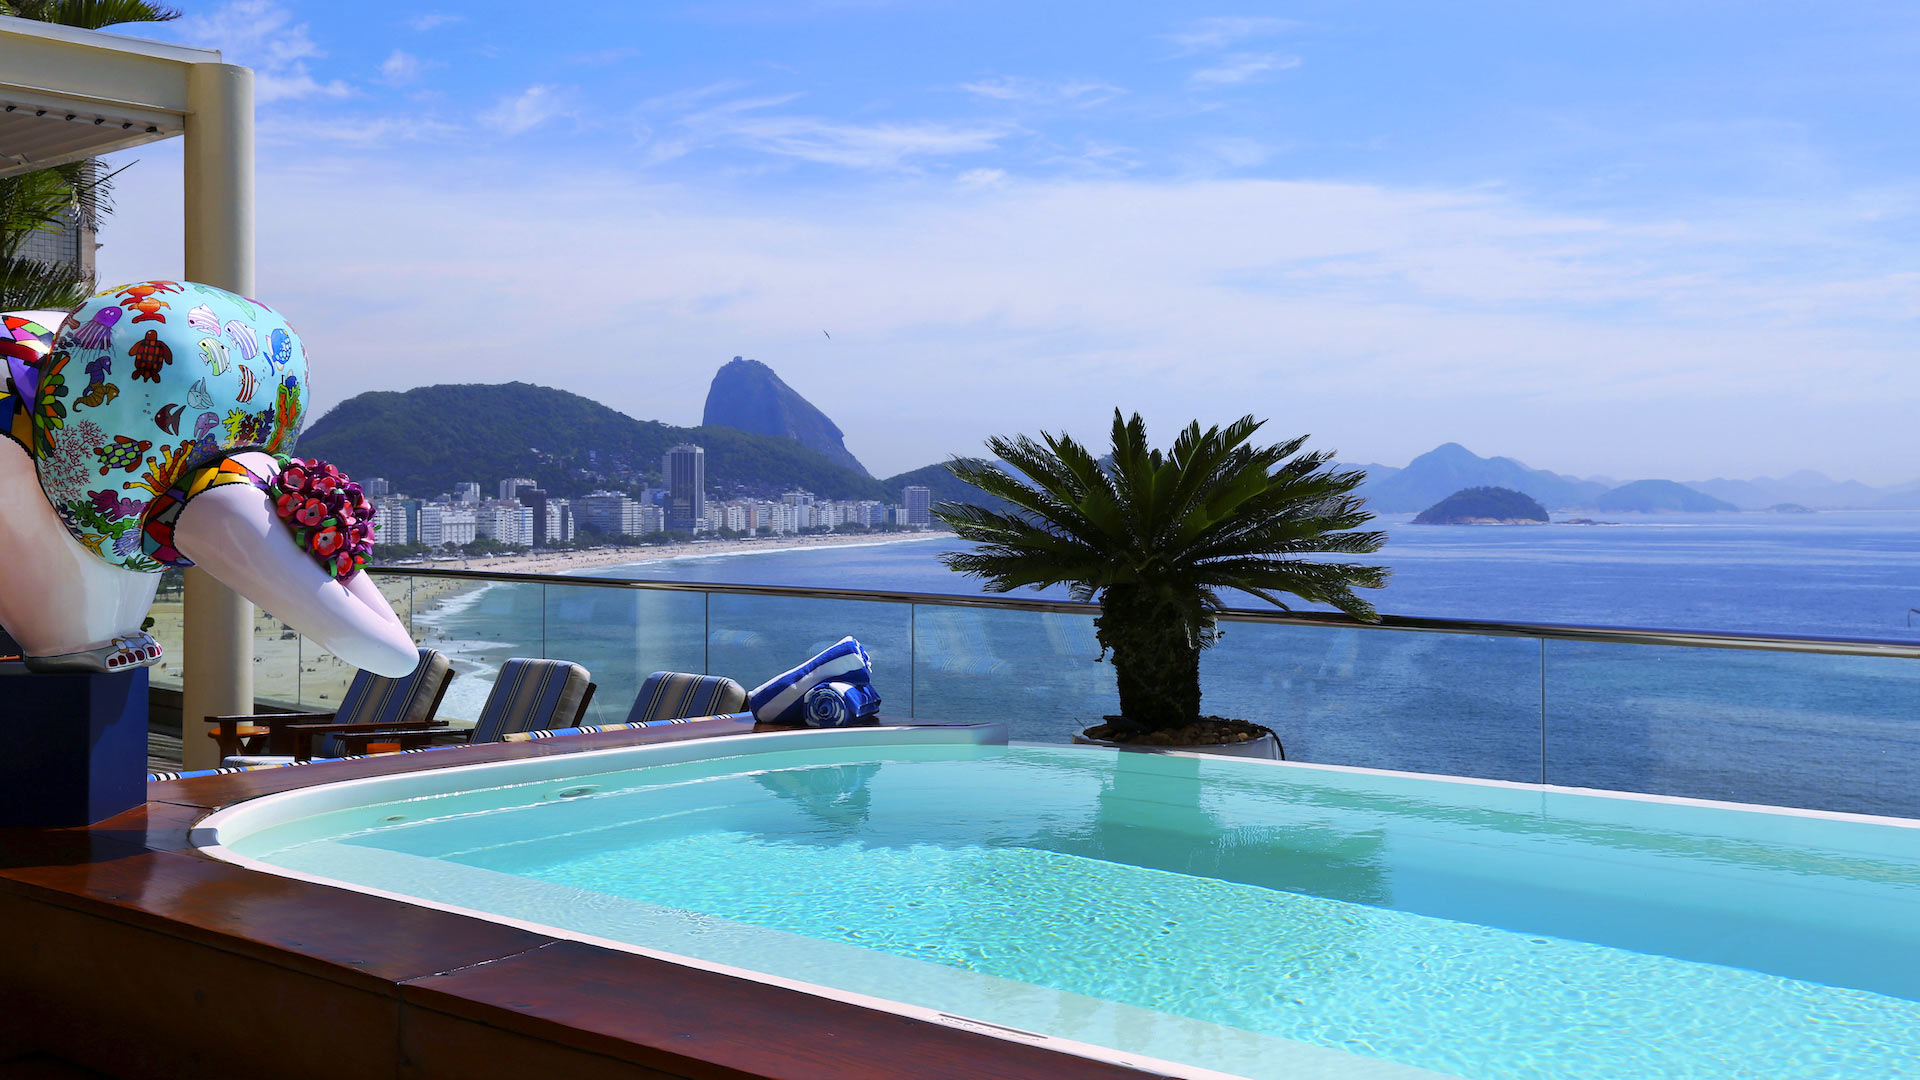 Polyana Penthouse - Villa Mieten In Rio De Janeiro ... tout Piscine Rio